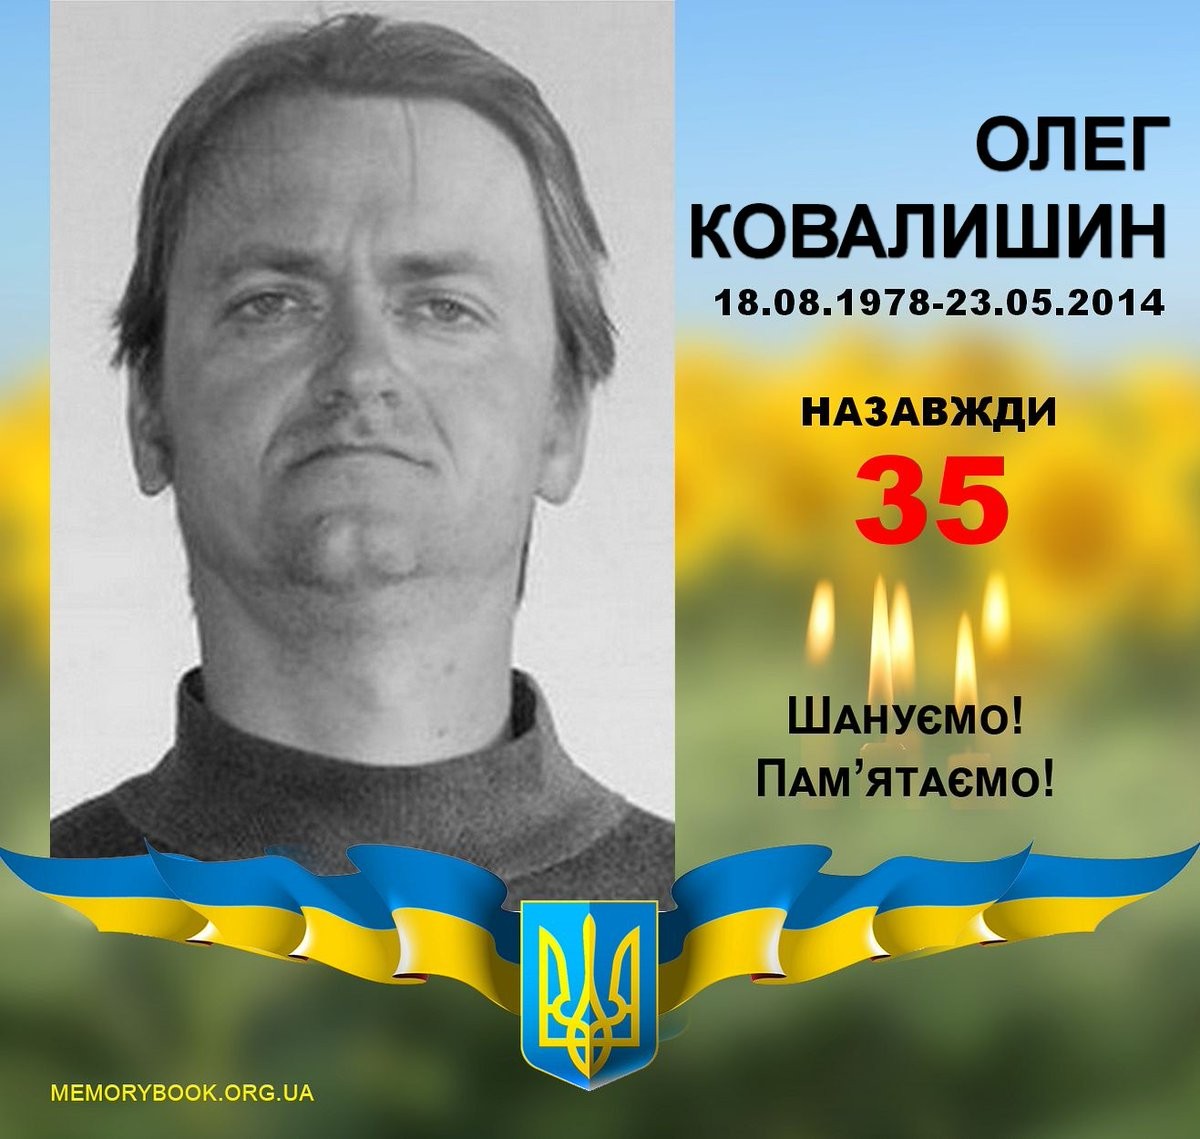 Олег Ковалишин, український доброволець, учасник Боїв за Карлівку, вікіпедист, відомий як Raider. Загинув у бою